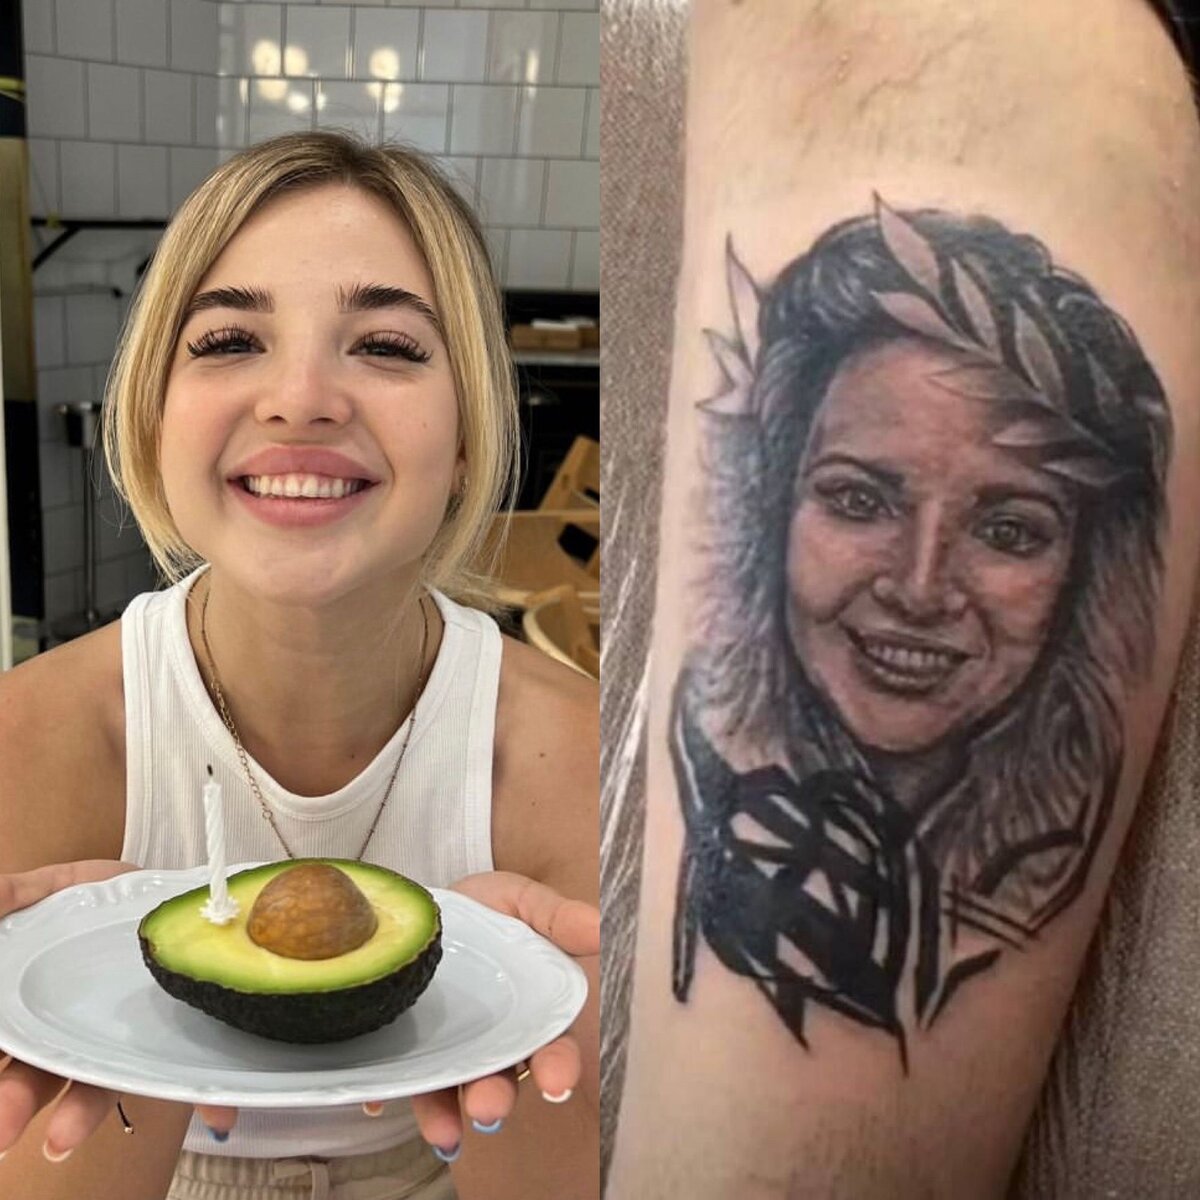 Анна Хилькевич стесняется своей новой татуировки